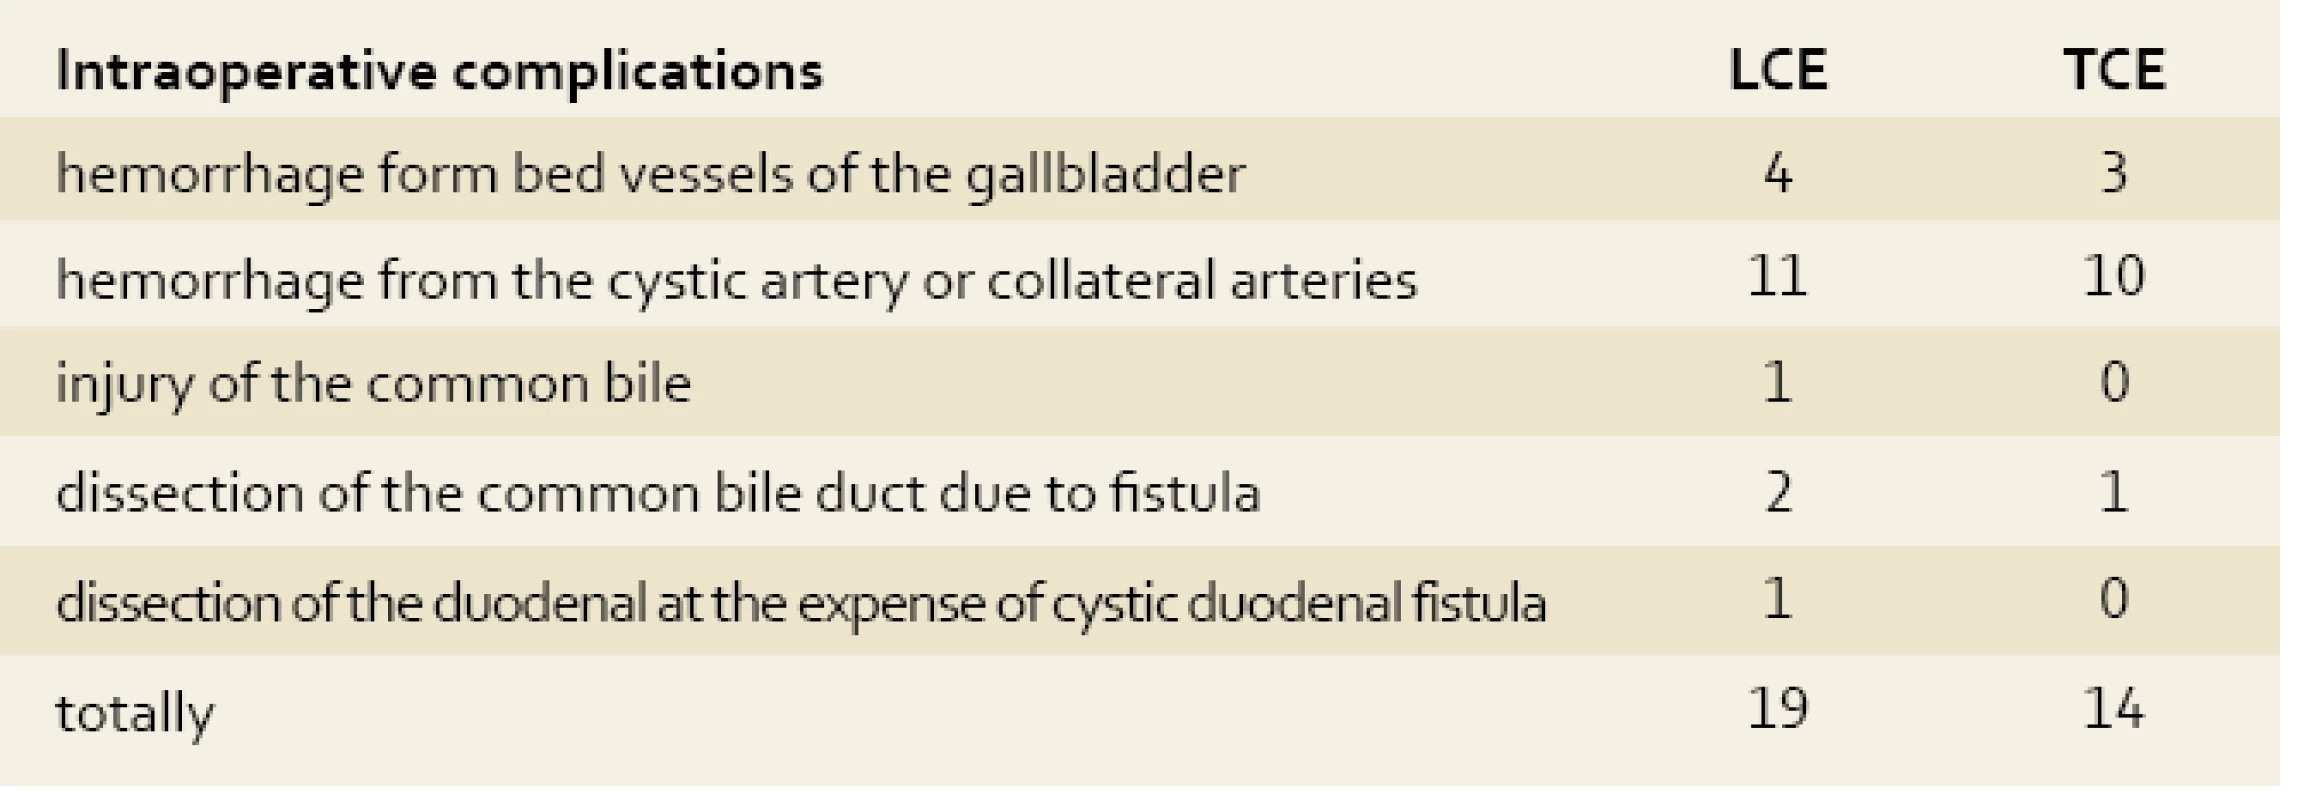 Intraoperative complications in the patients with acute calculous cholecystitis.
Tab. 4. Intraoperační komplikace u pacientů s akutní kalkulózní cholecystitidou.